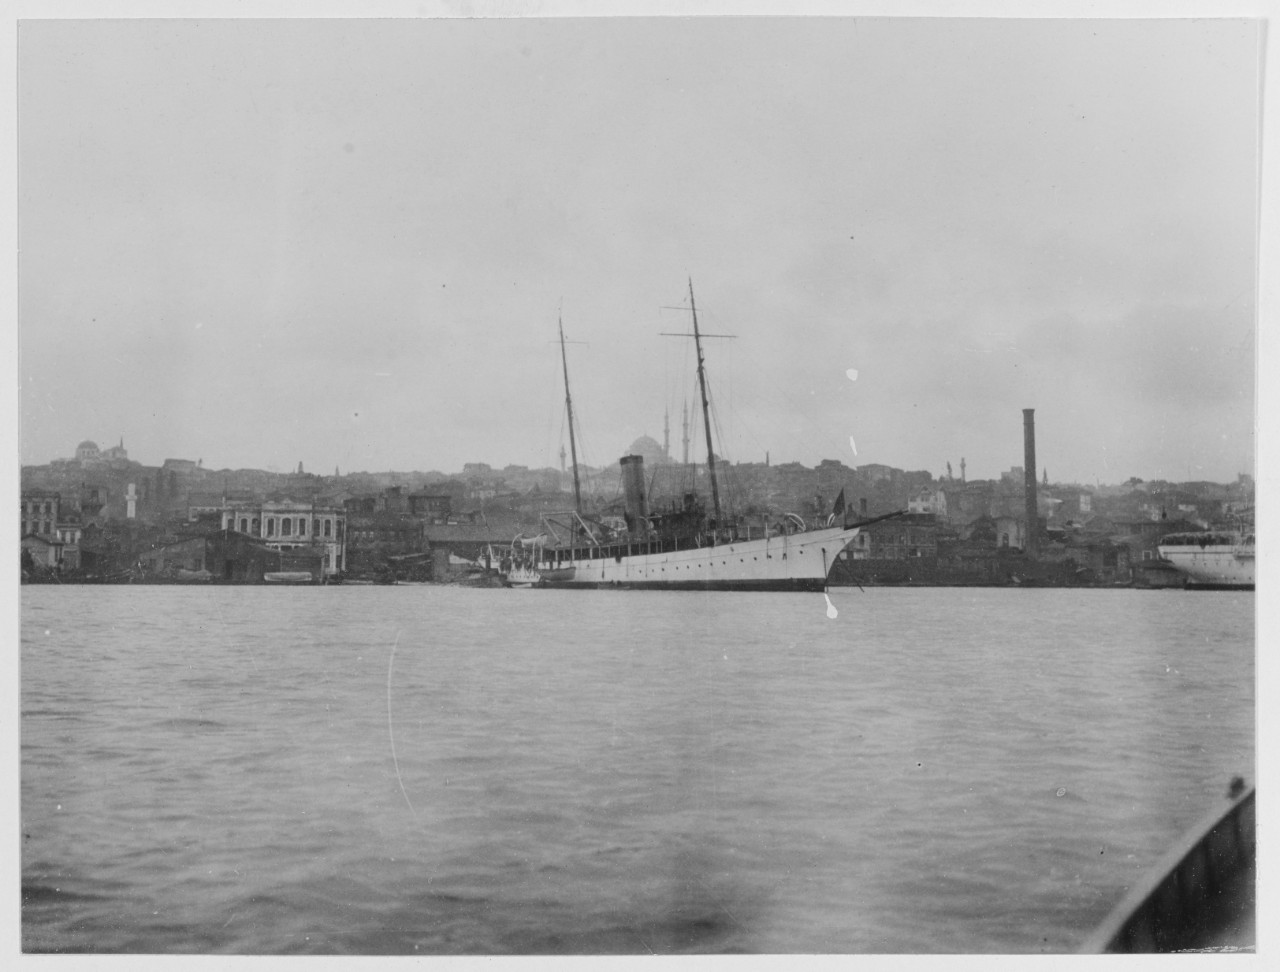 USS SCORPION (1898-1929)